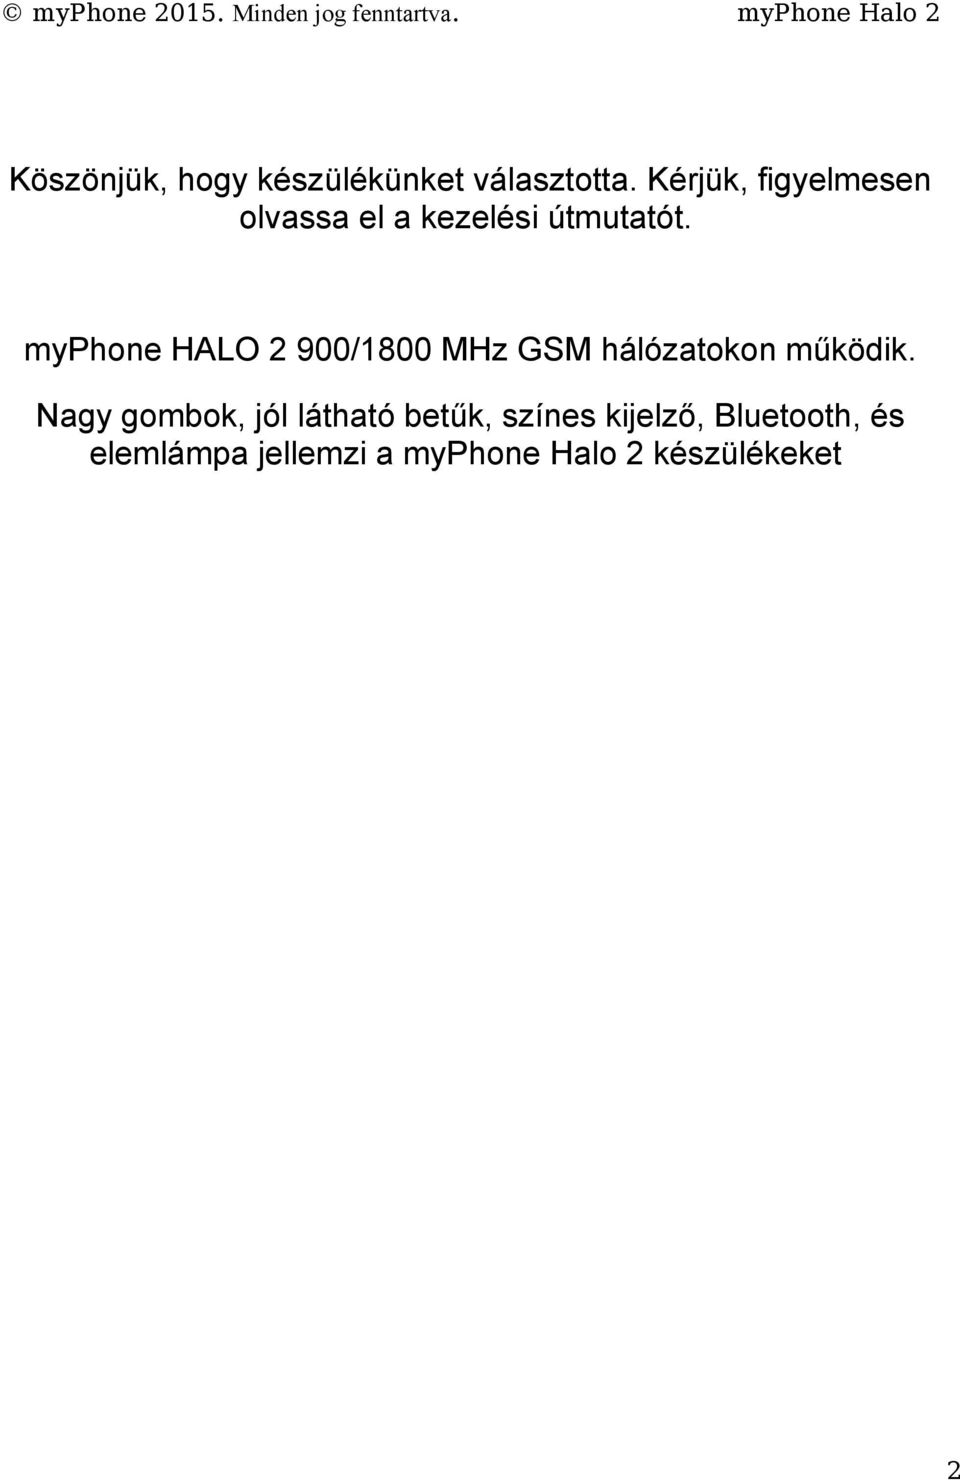 myphone HALO 2 900/1800 MHz GSM hálózatokon működik.